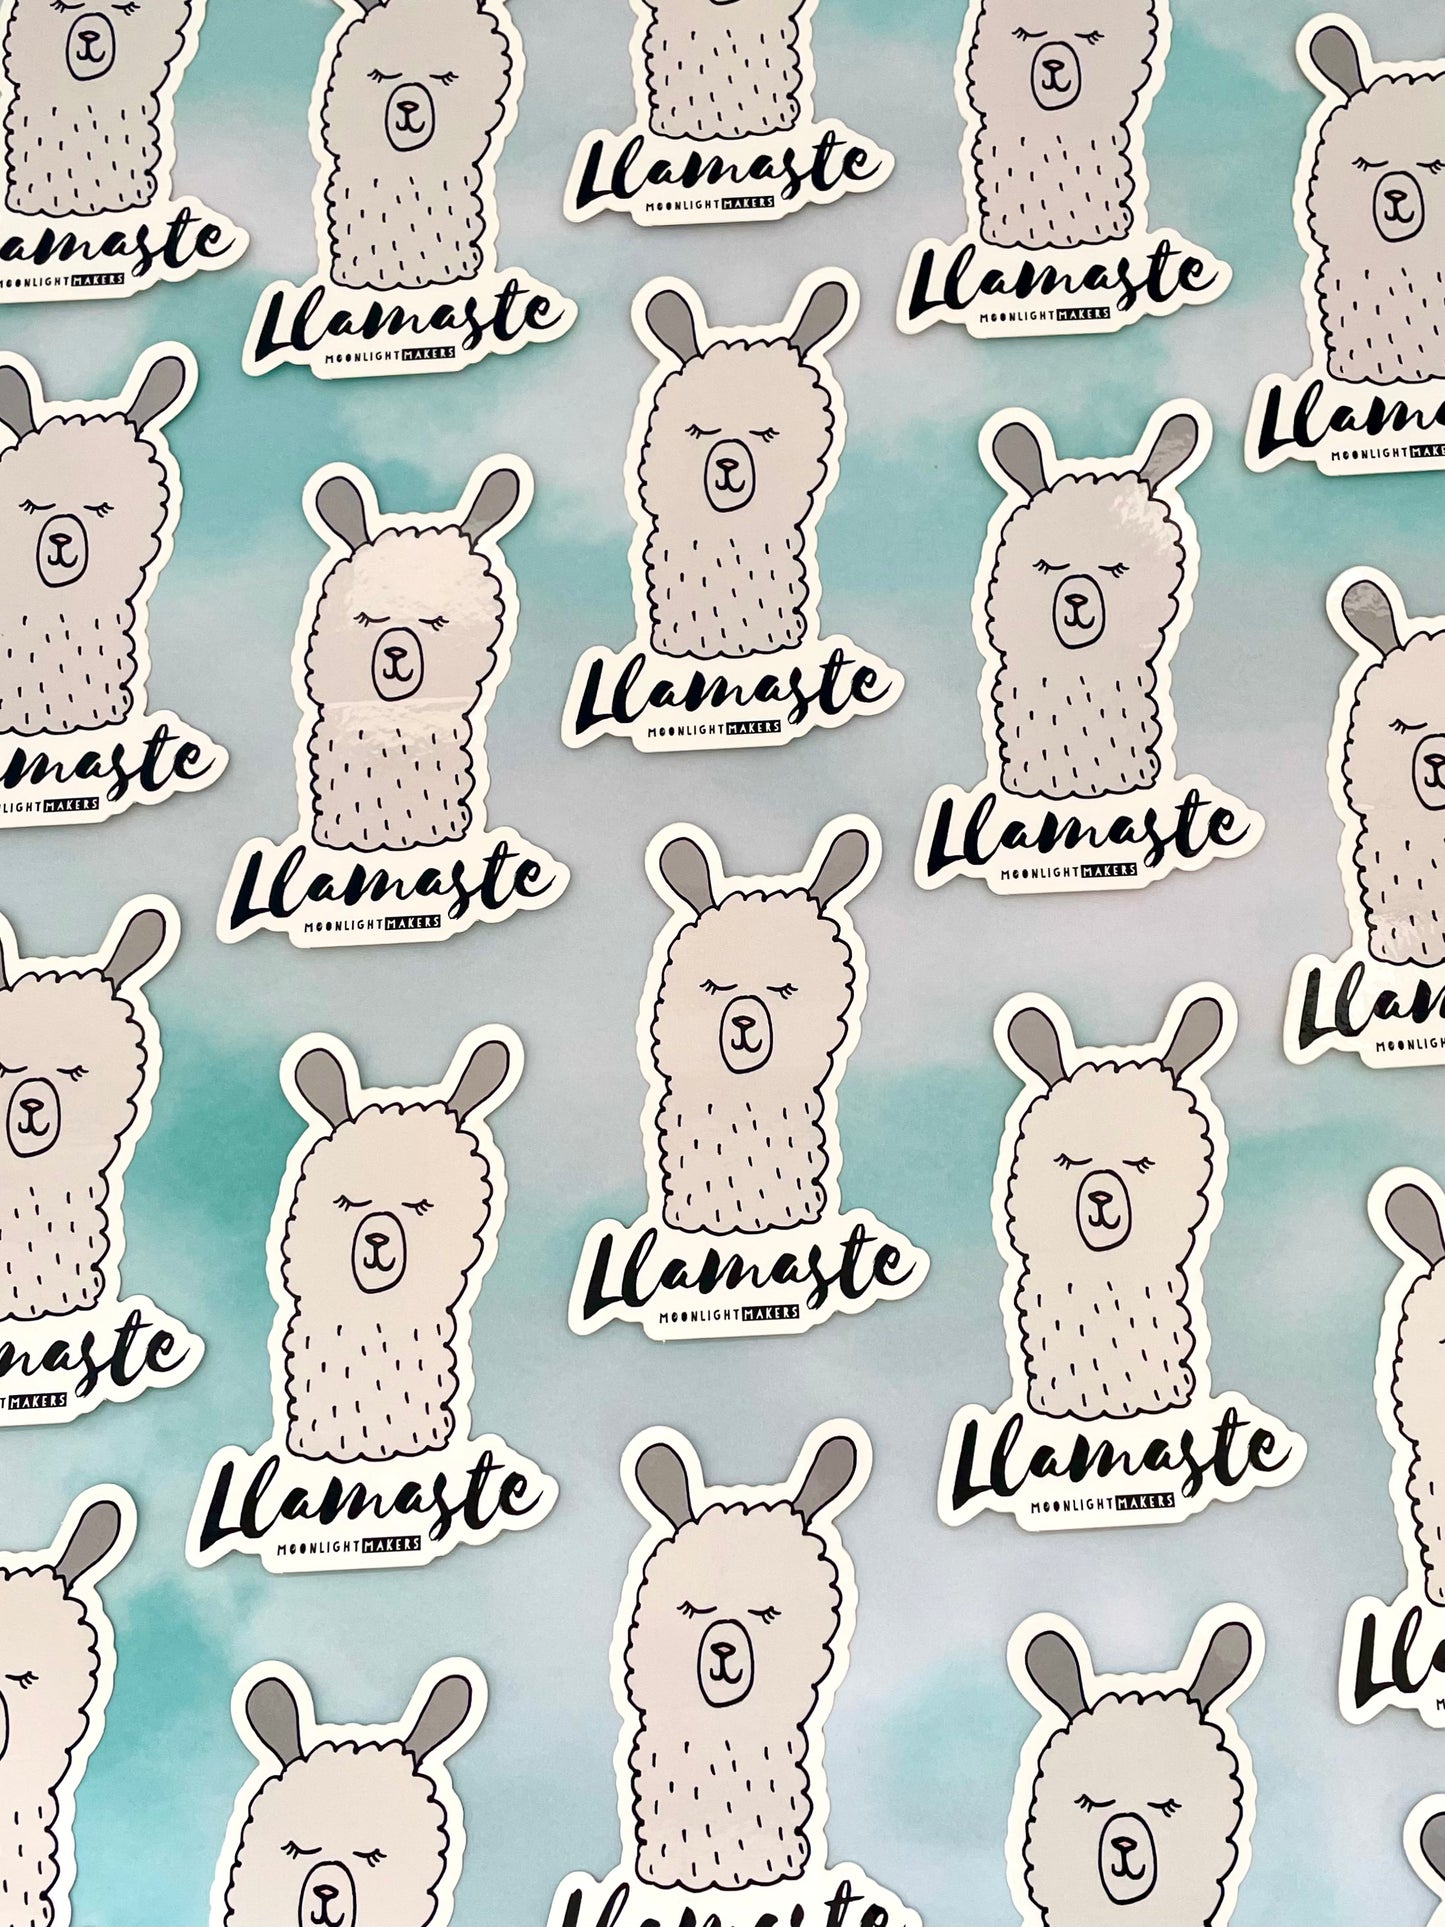 Llamaste - Die Cut Sticker - MoonlightMakers